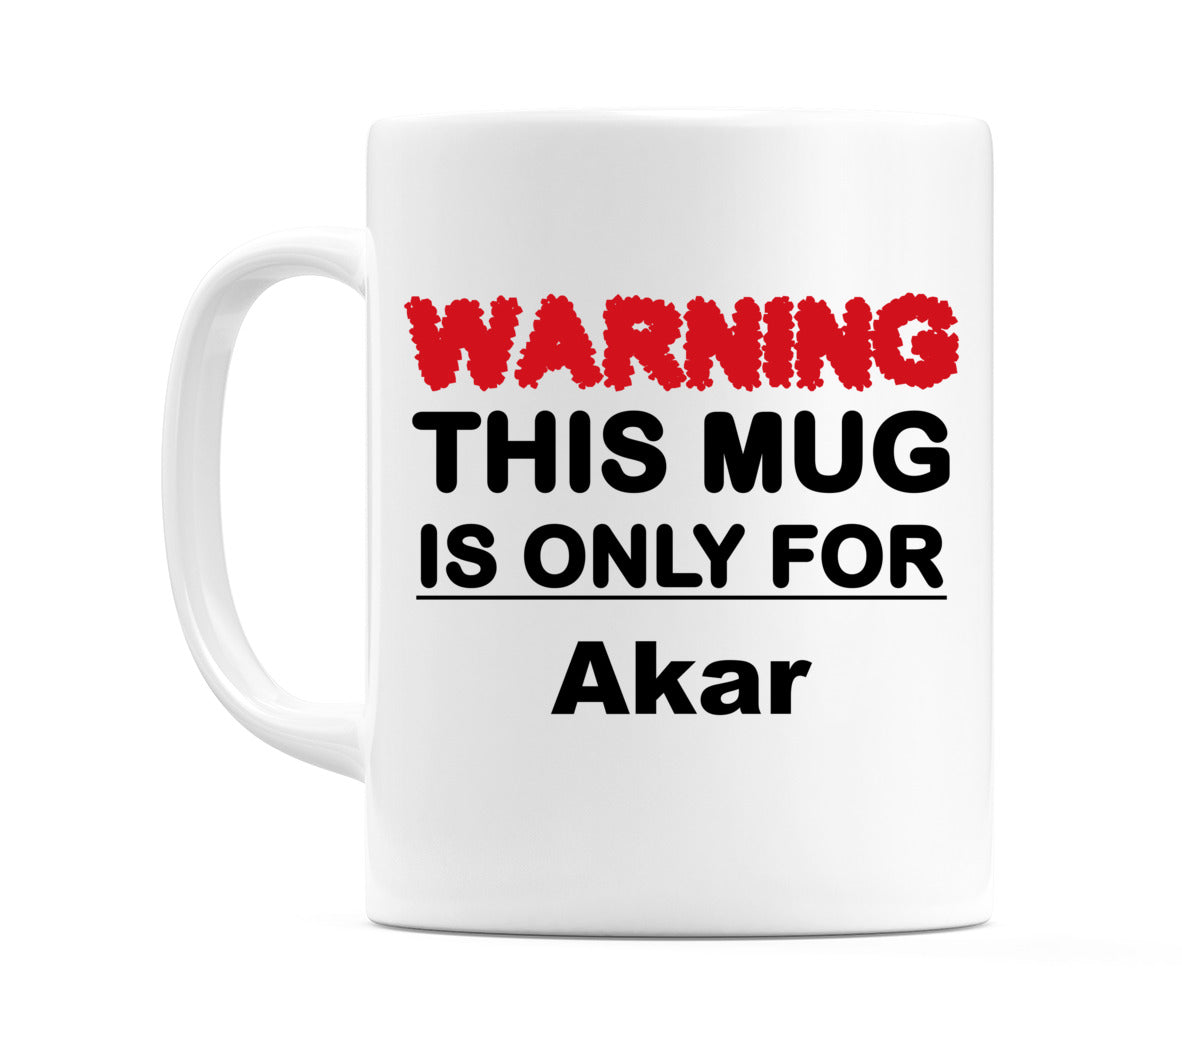 Warning This Mug is ONLY for Akar Mug